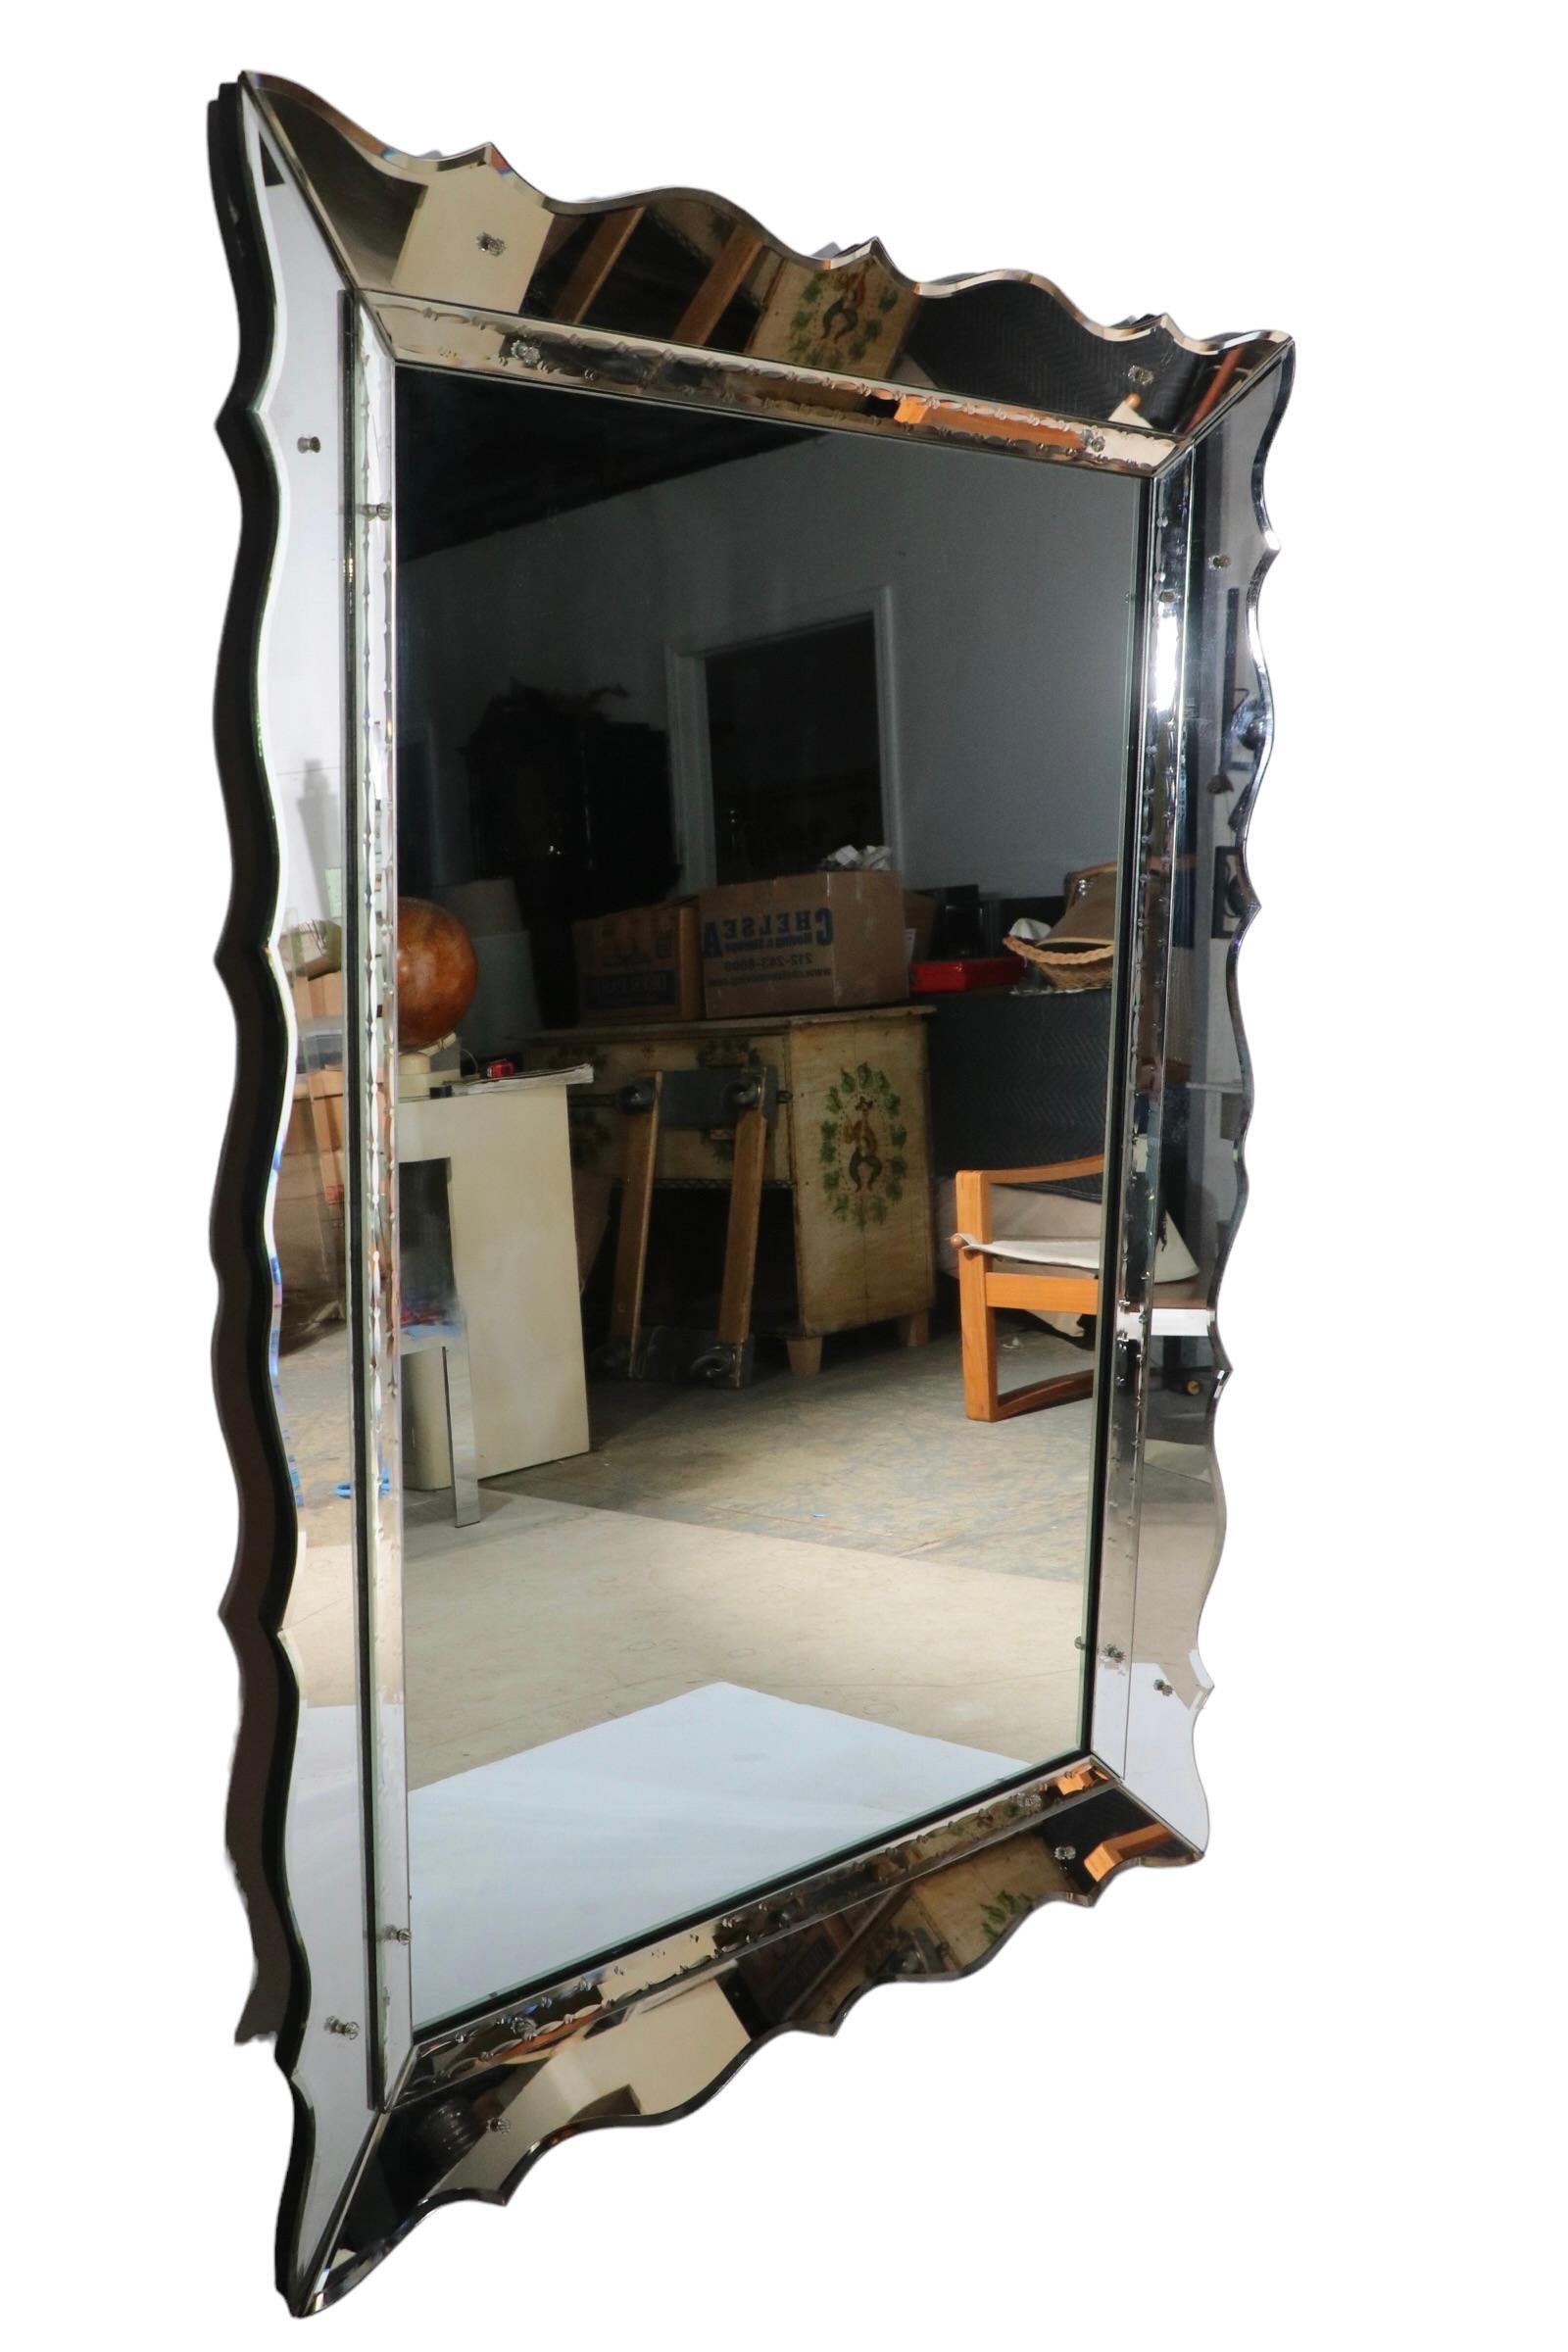 Miroir de style Art Deco, Hollywood Regency et Vénitien à la manière de Marchand. Cet exemple présente un bord festonné en miroir et une garniture en miroir qui entoure le panneau rectangulaire du miroir intérieur. La pièce est en très bon état